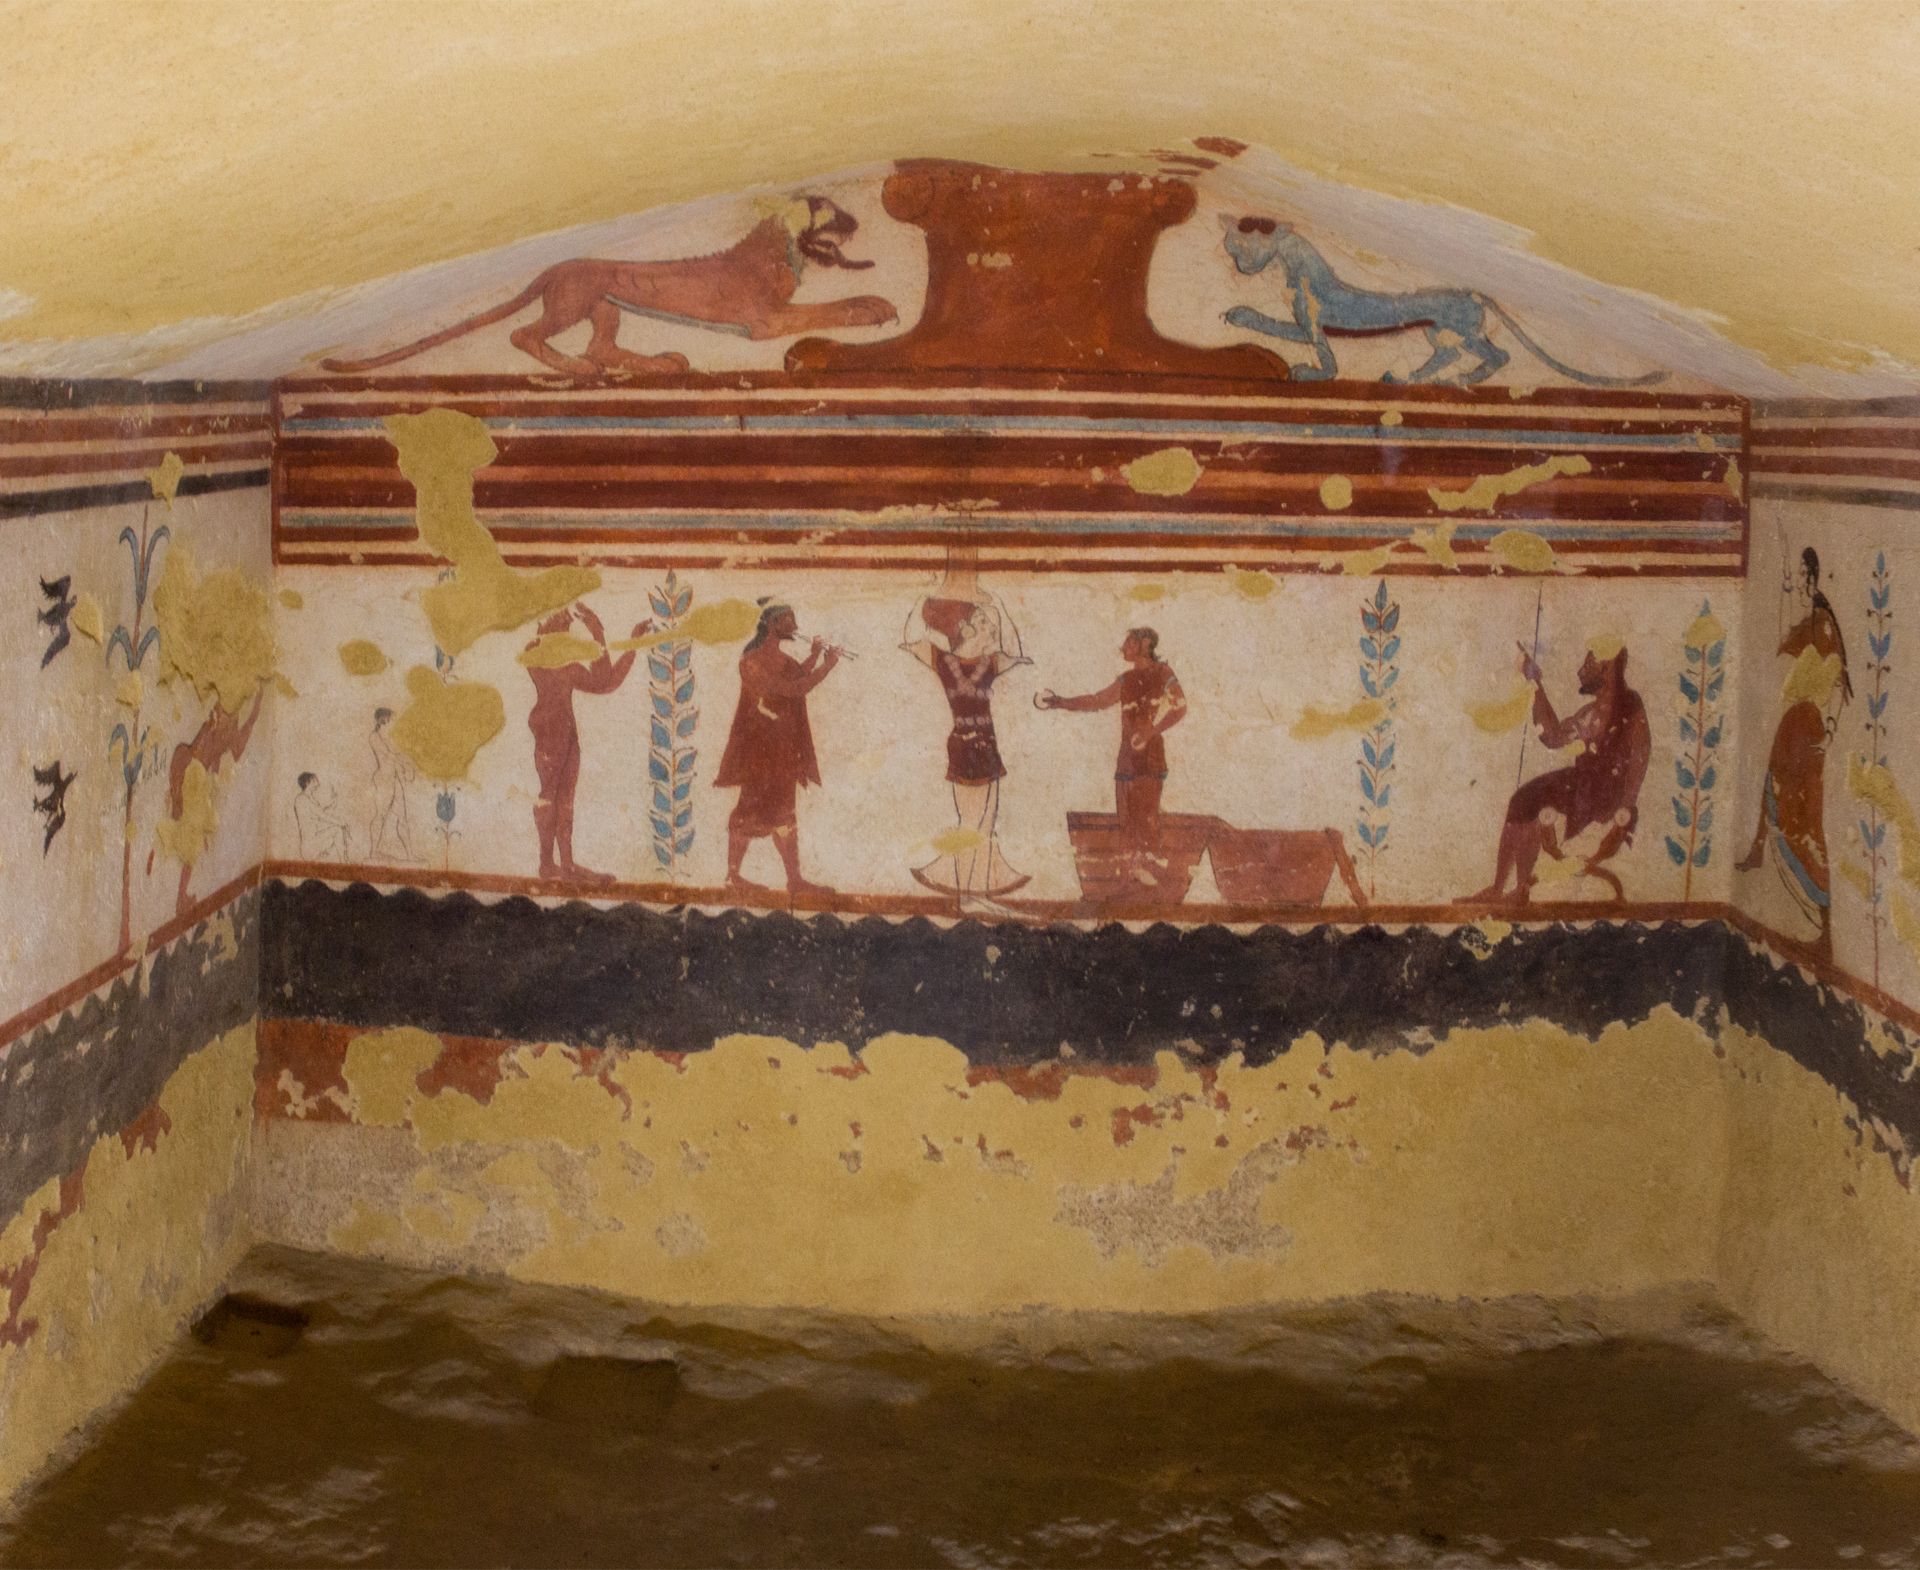 Nécropole de Tarquinia, Latium - Italie